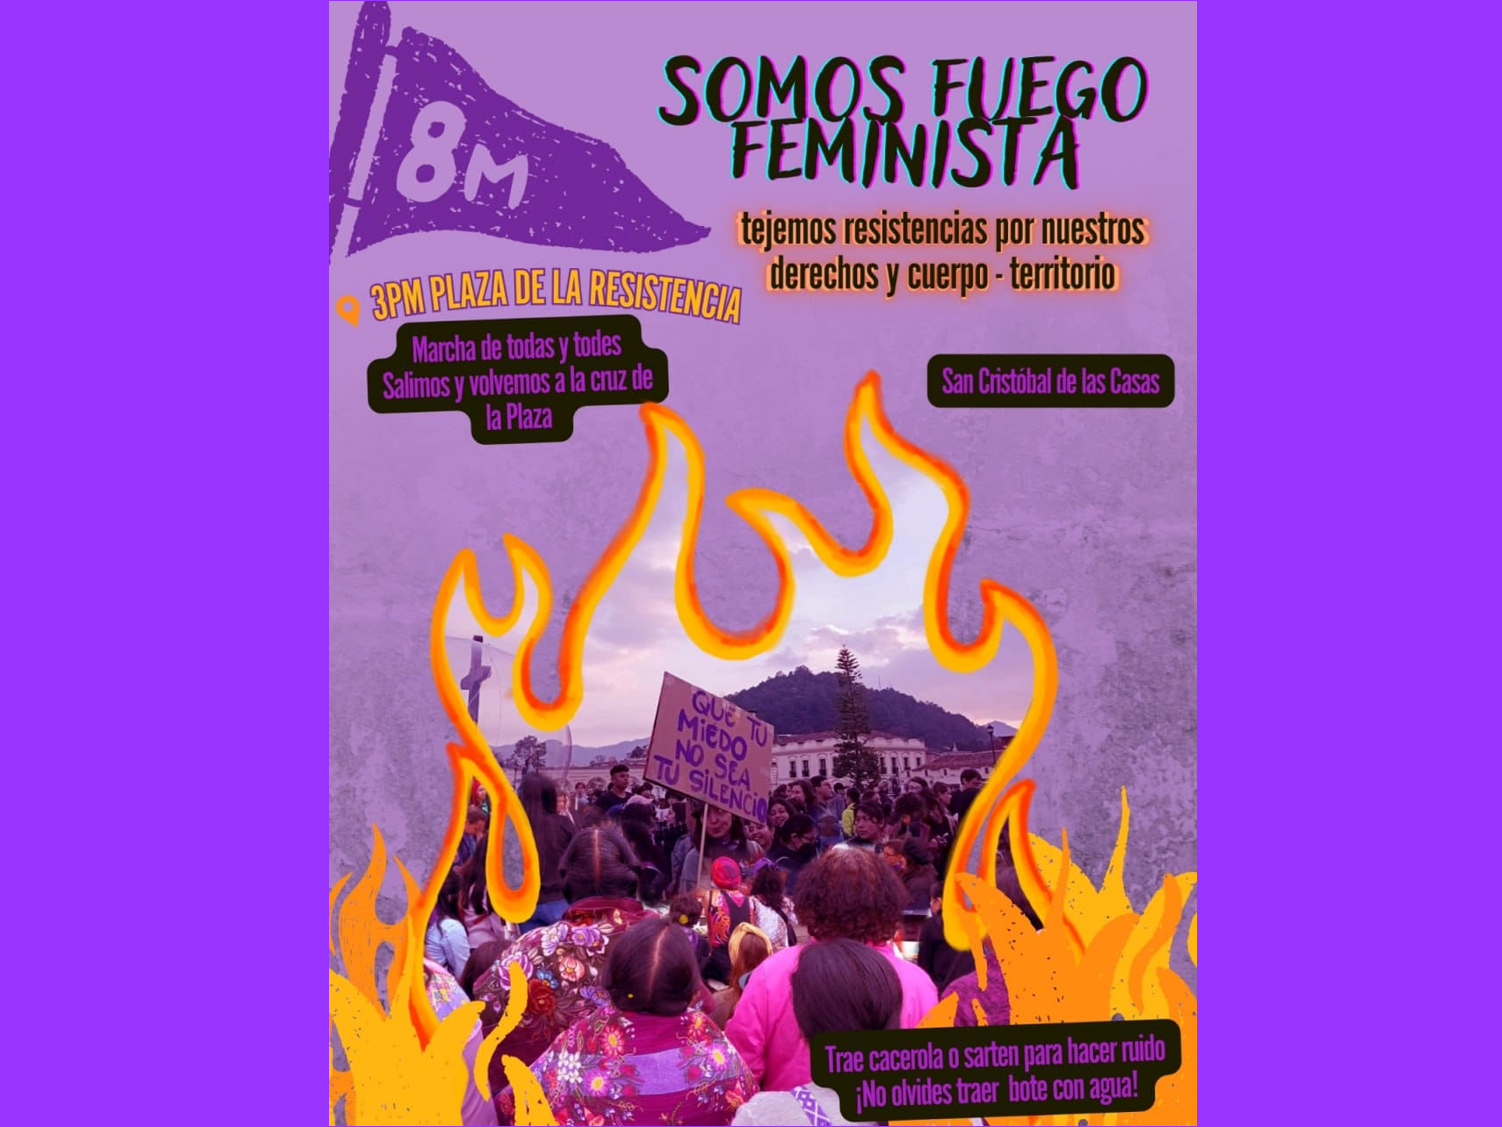 8M en San Cristóbal de Las Casas: “Somos fuego feminista – tejemos resistencias por nuestros derechos y cuerpo-territorio”